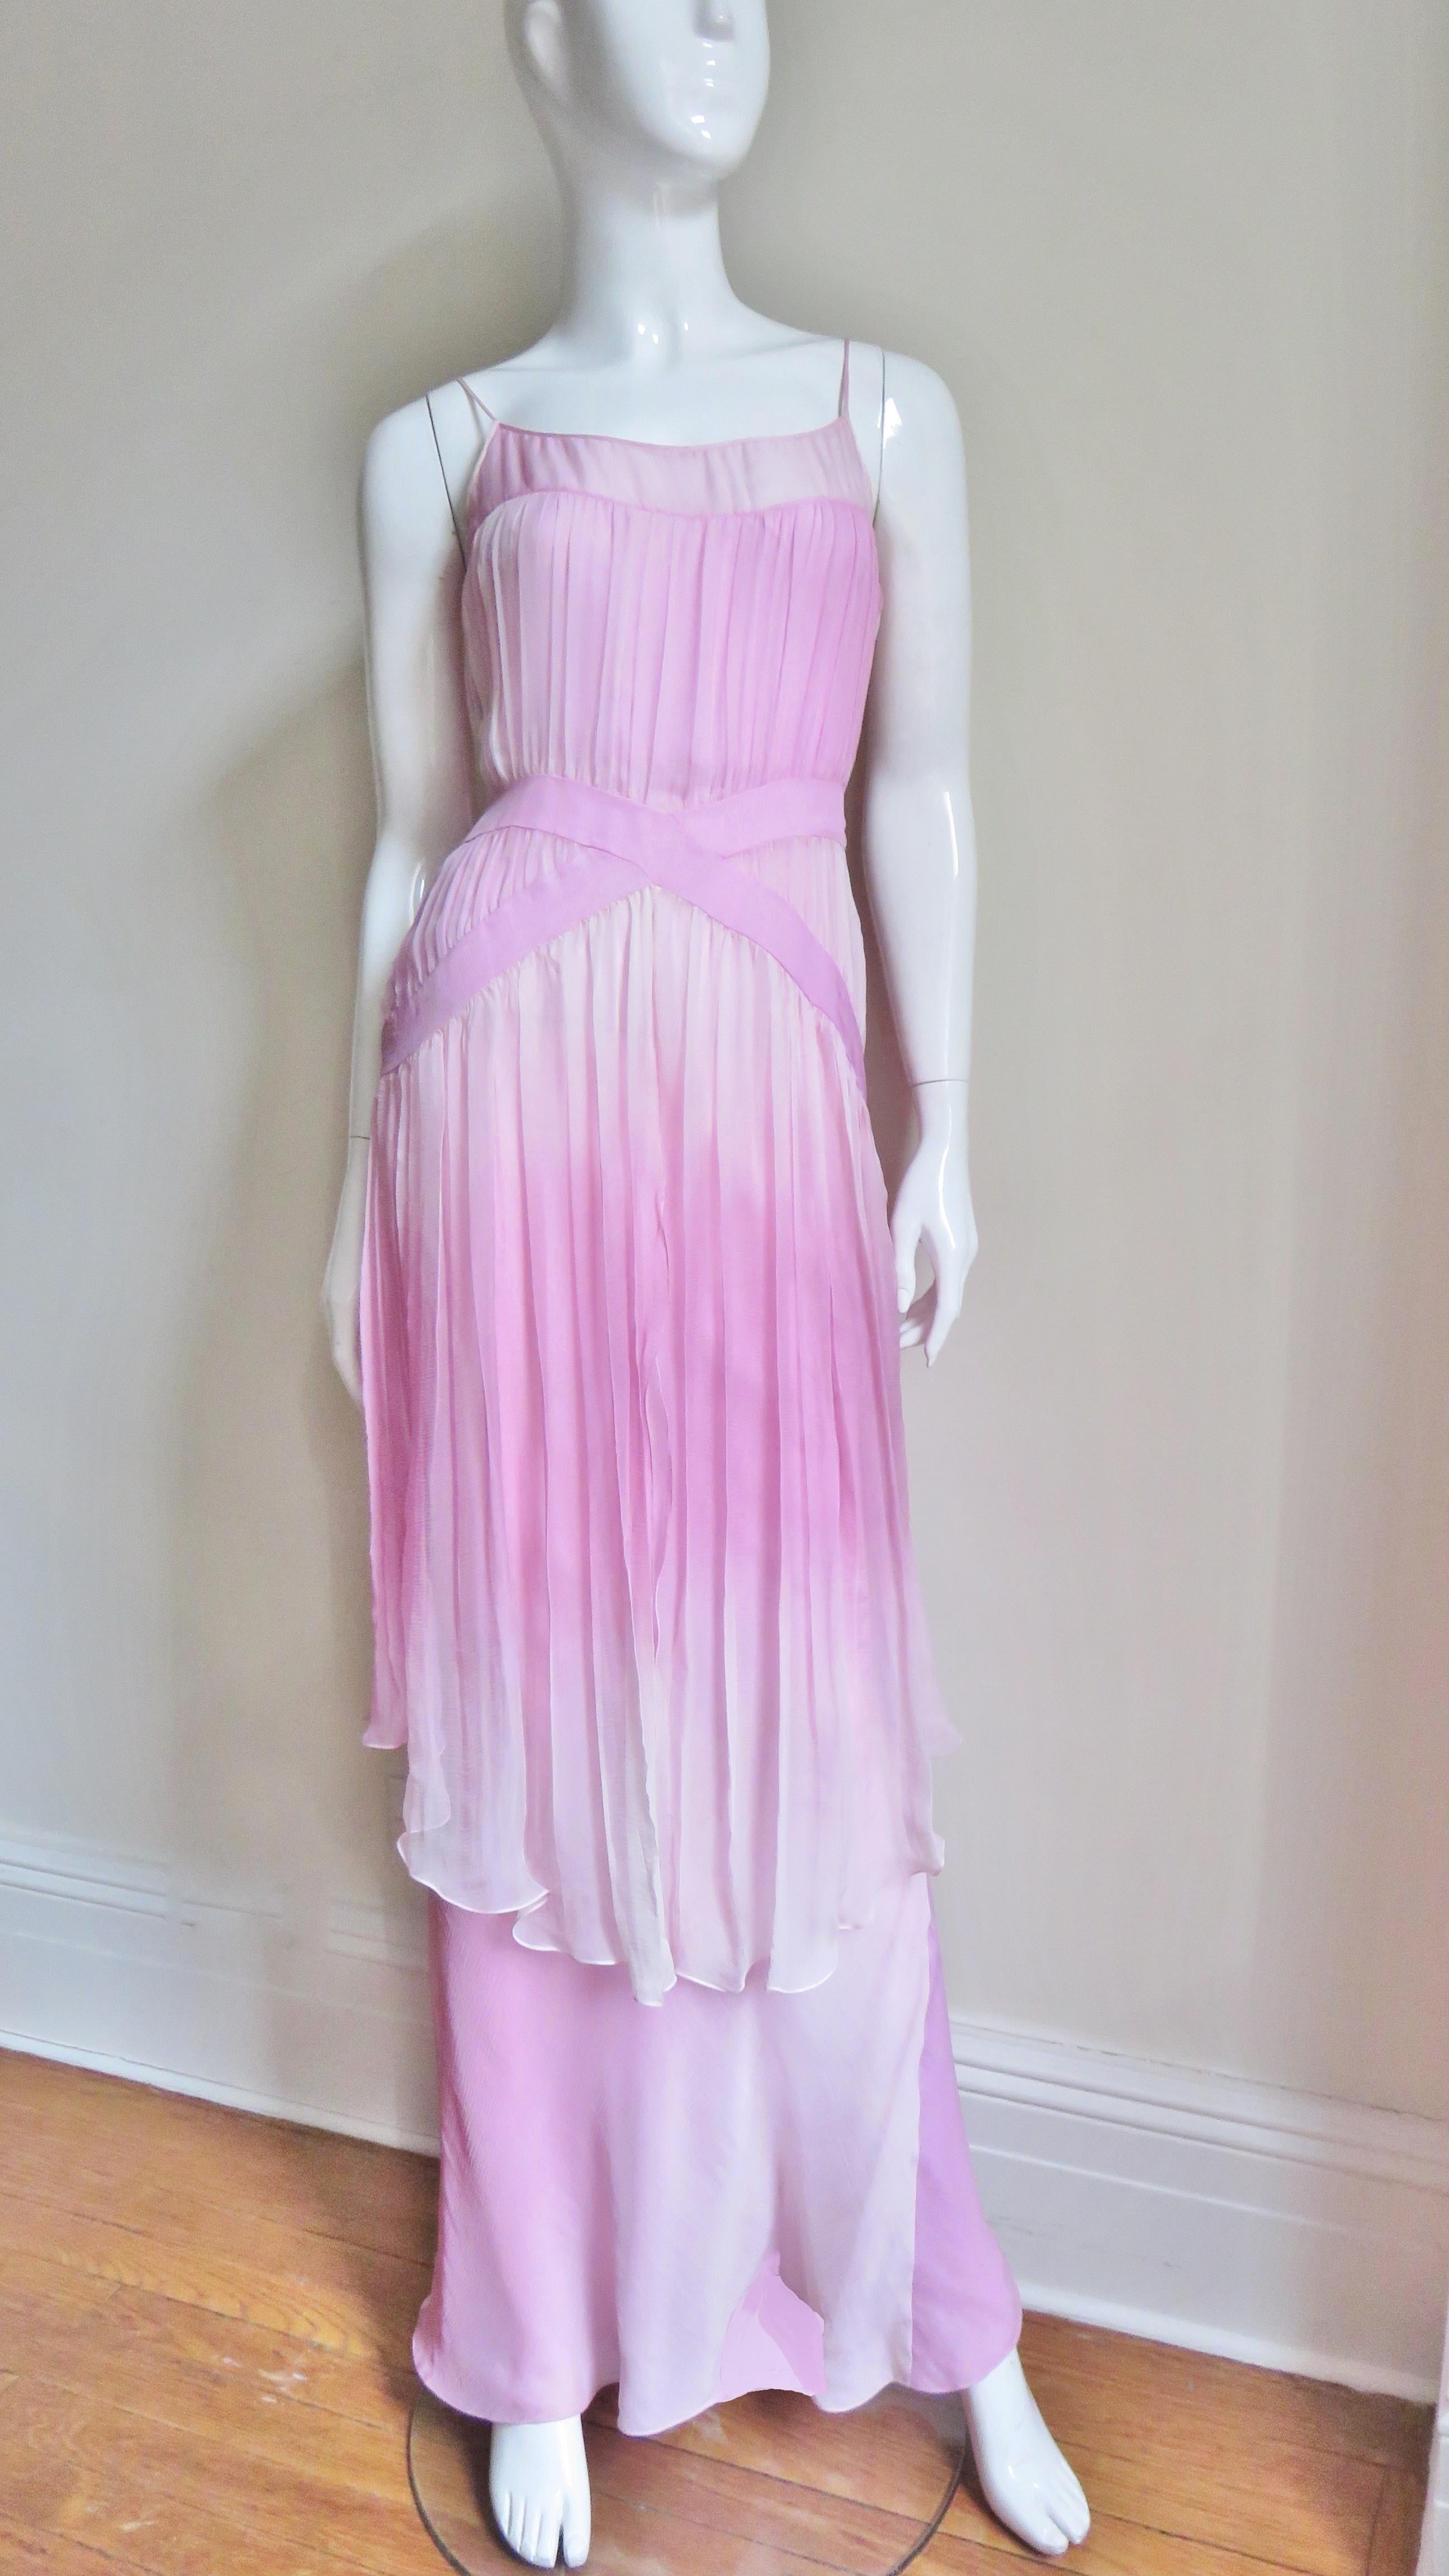 Une spectaculaire robe en soie de John Galliano dans des tons roses ombrés.  Le corsage a des bretelles spaghetti et se fronce sur deux bandes angulaires qui se croisent à la taille.  Elle comporte une jupe à deux niveaux, le niveau le plus court